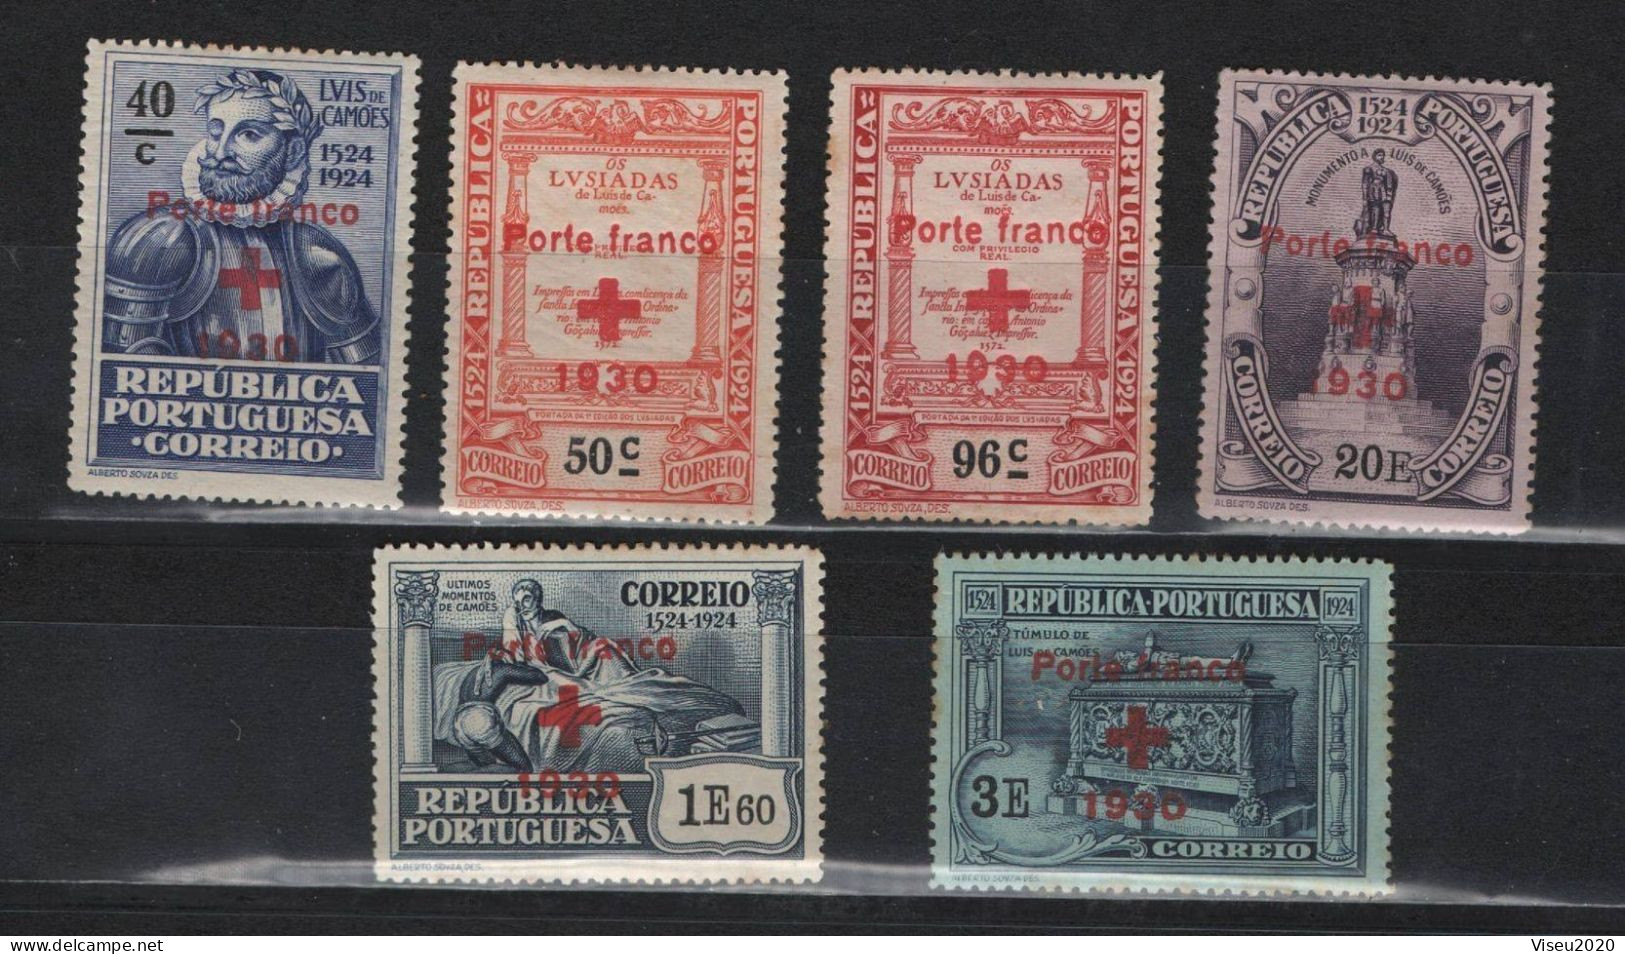 Portugal Porte Franco 1930 - Selos Do 4º Centenário Do Nascimento De Luís De Camões (1924) OVP - Set Completo - Unused Stamps